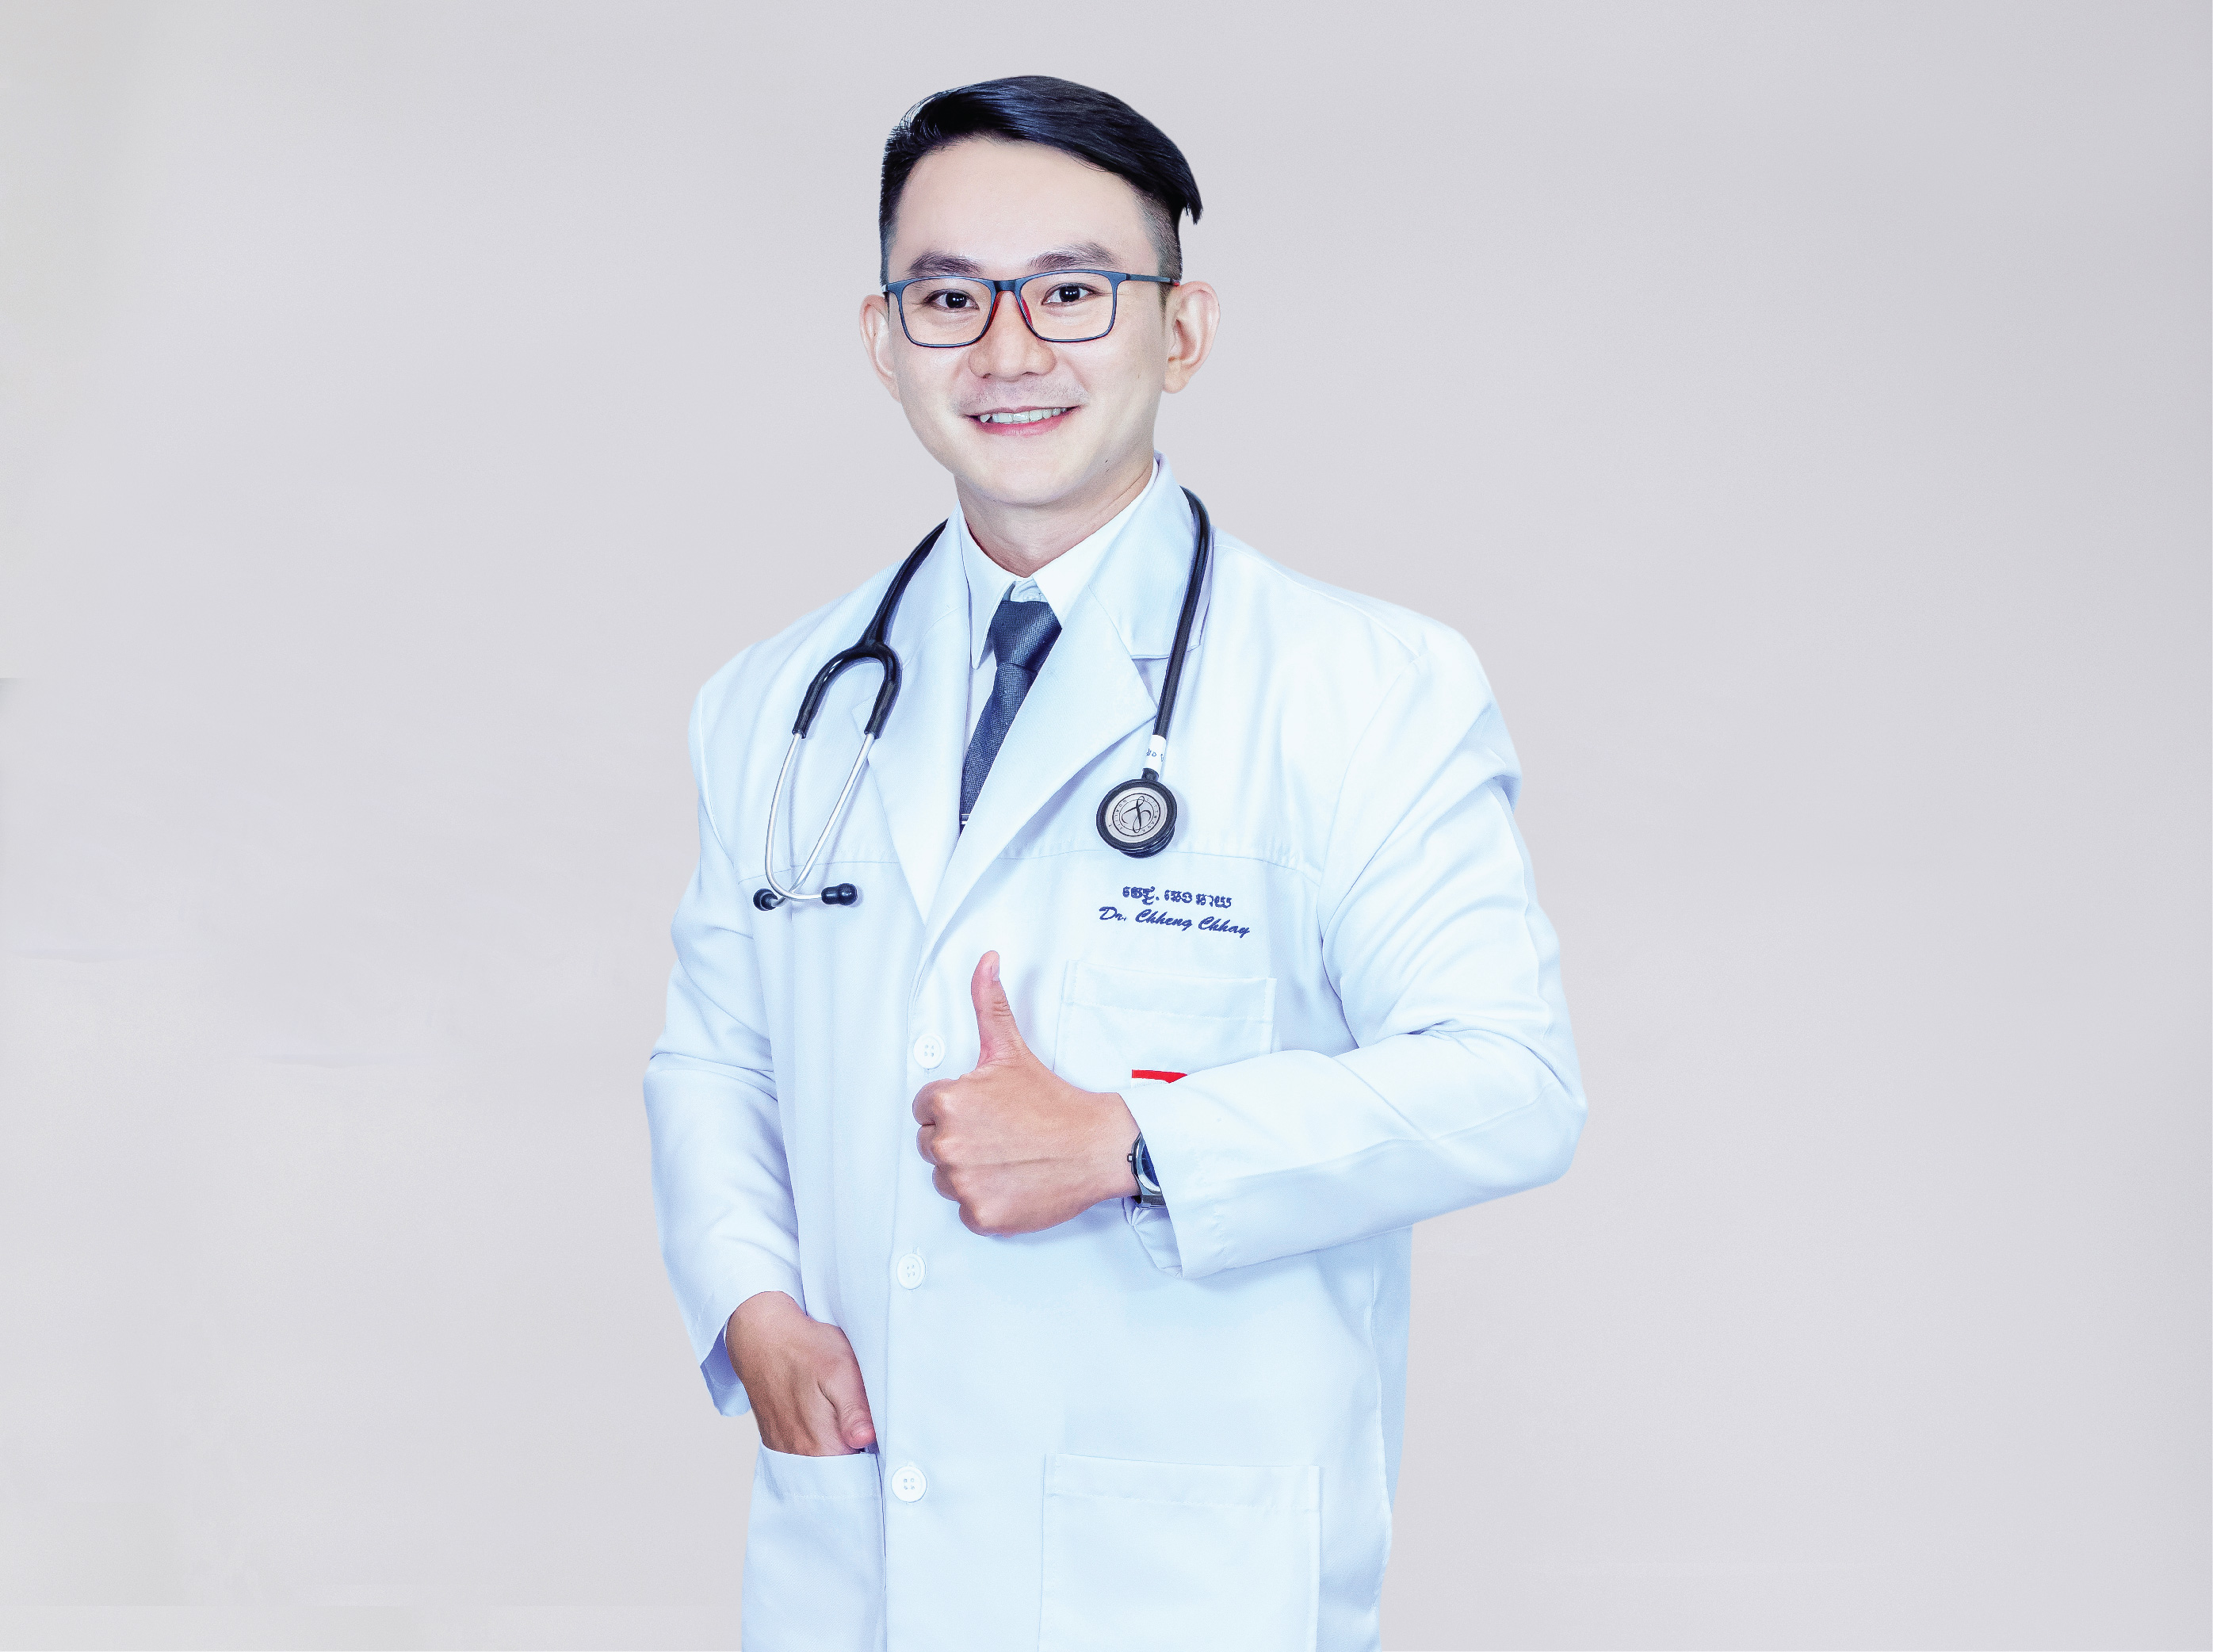 Dr. Chheng Chhay